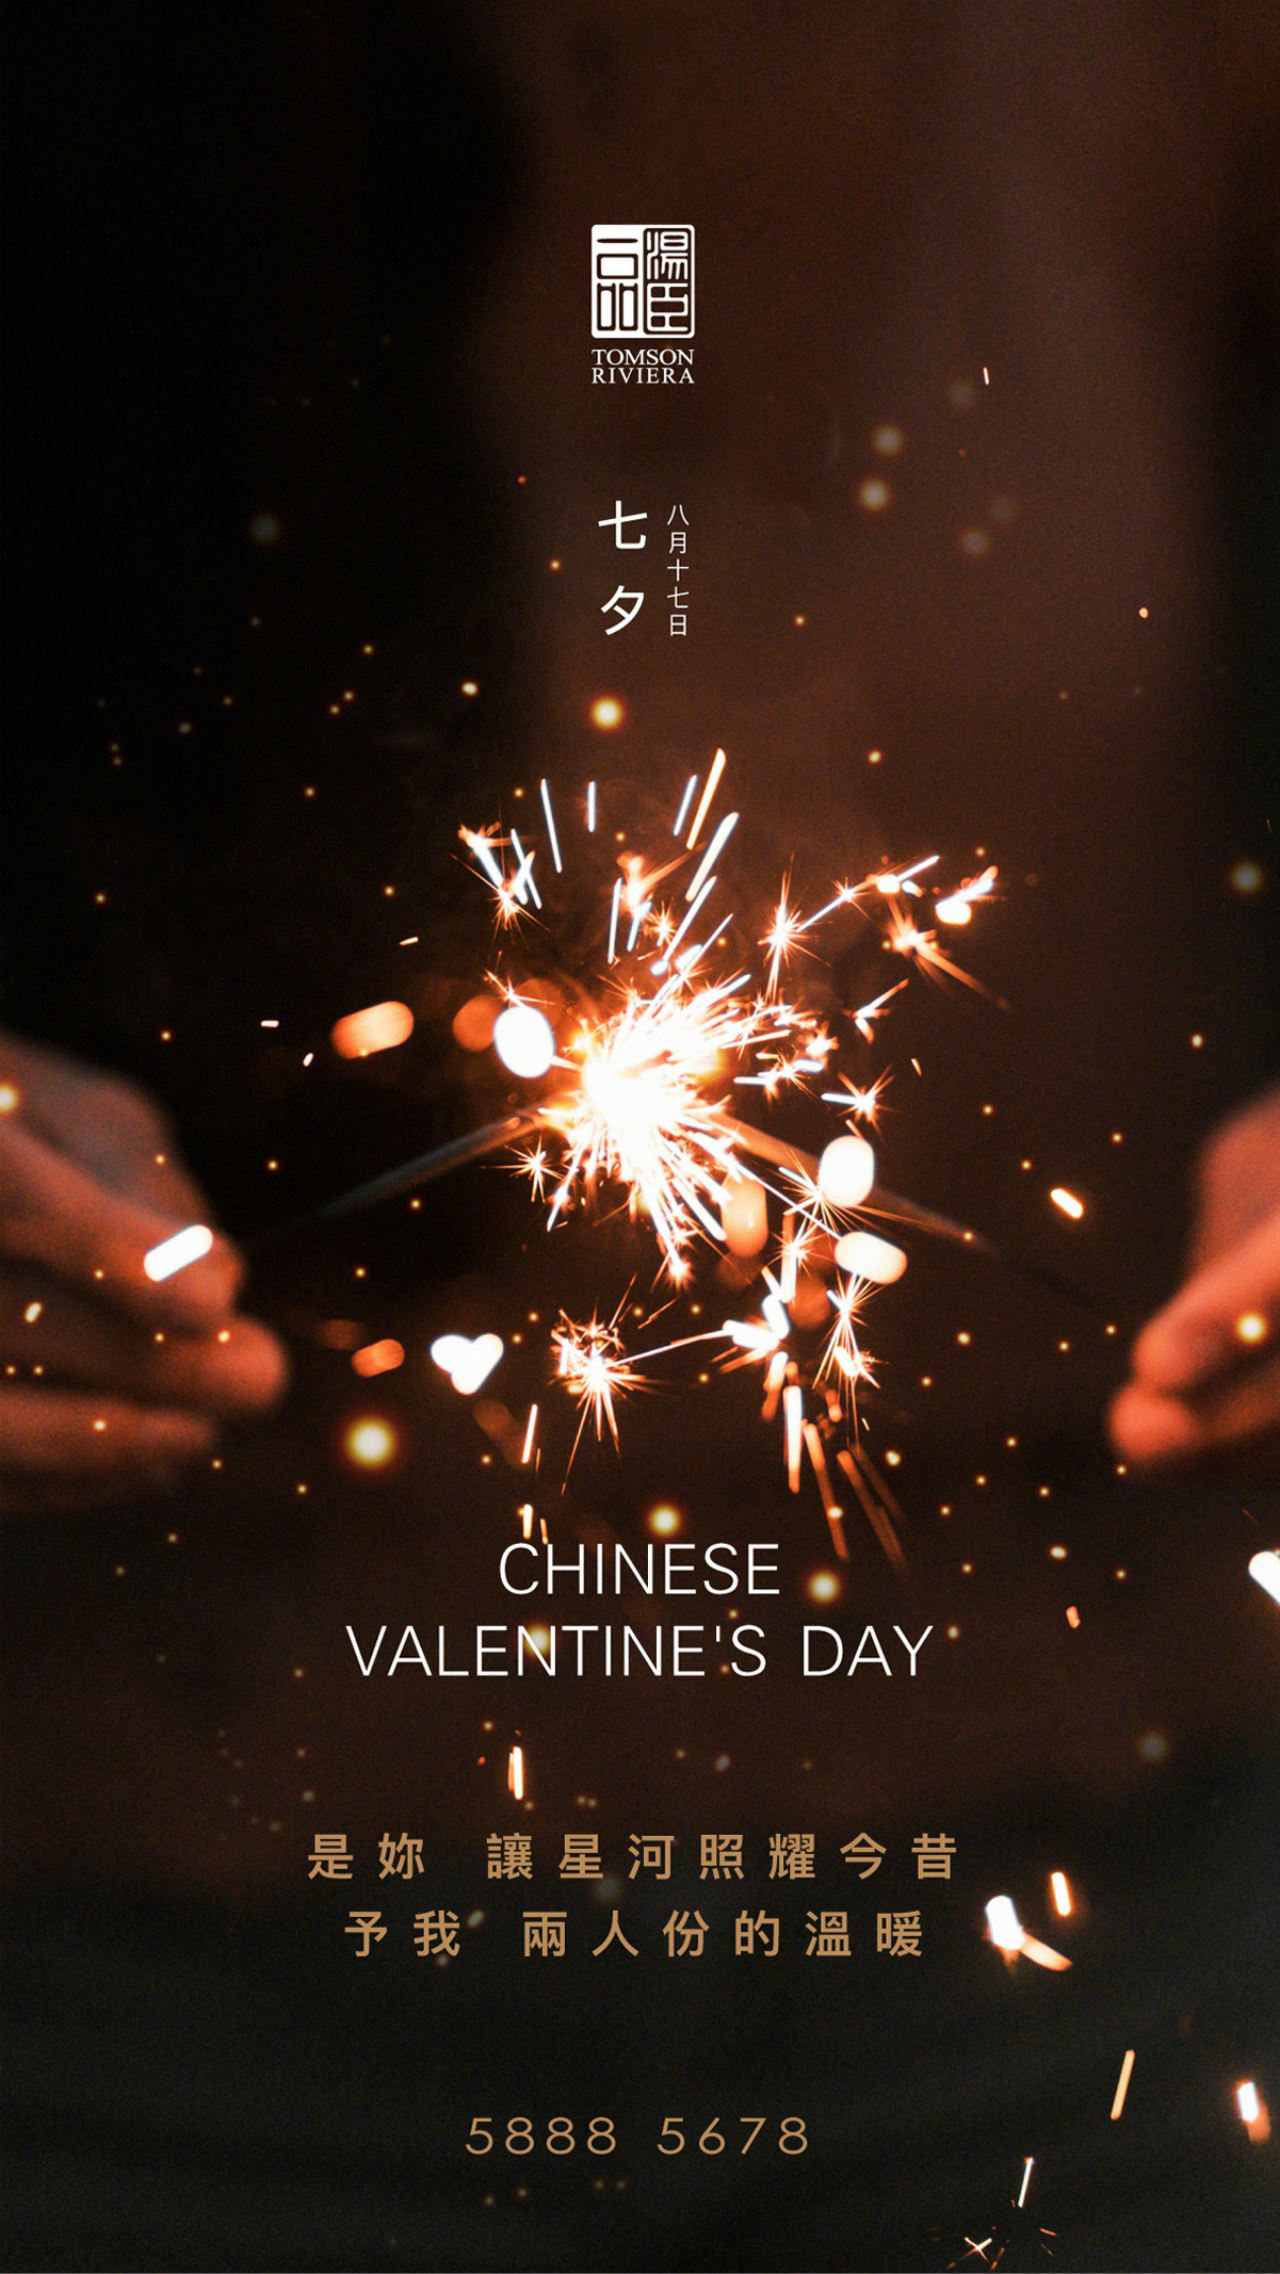 Chinese valentine's day